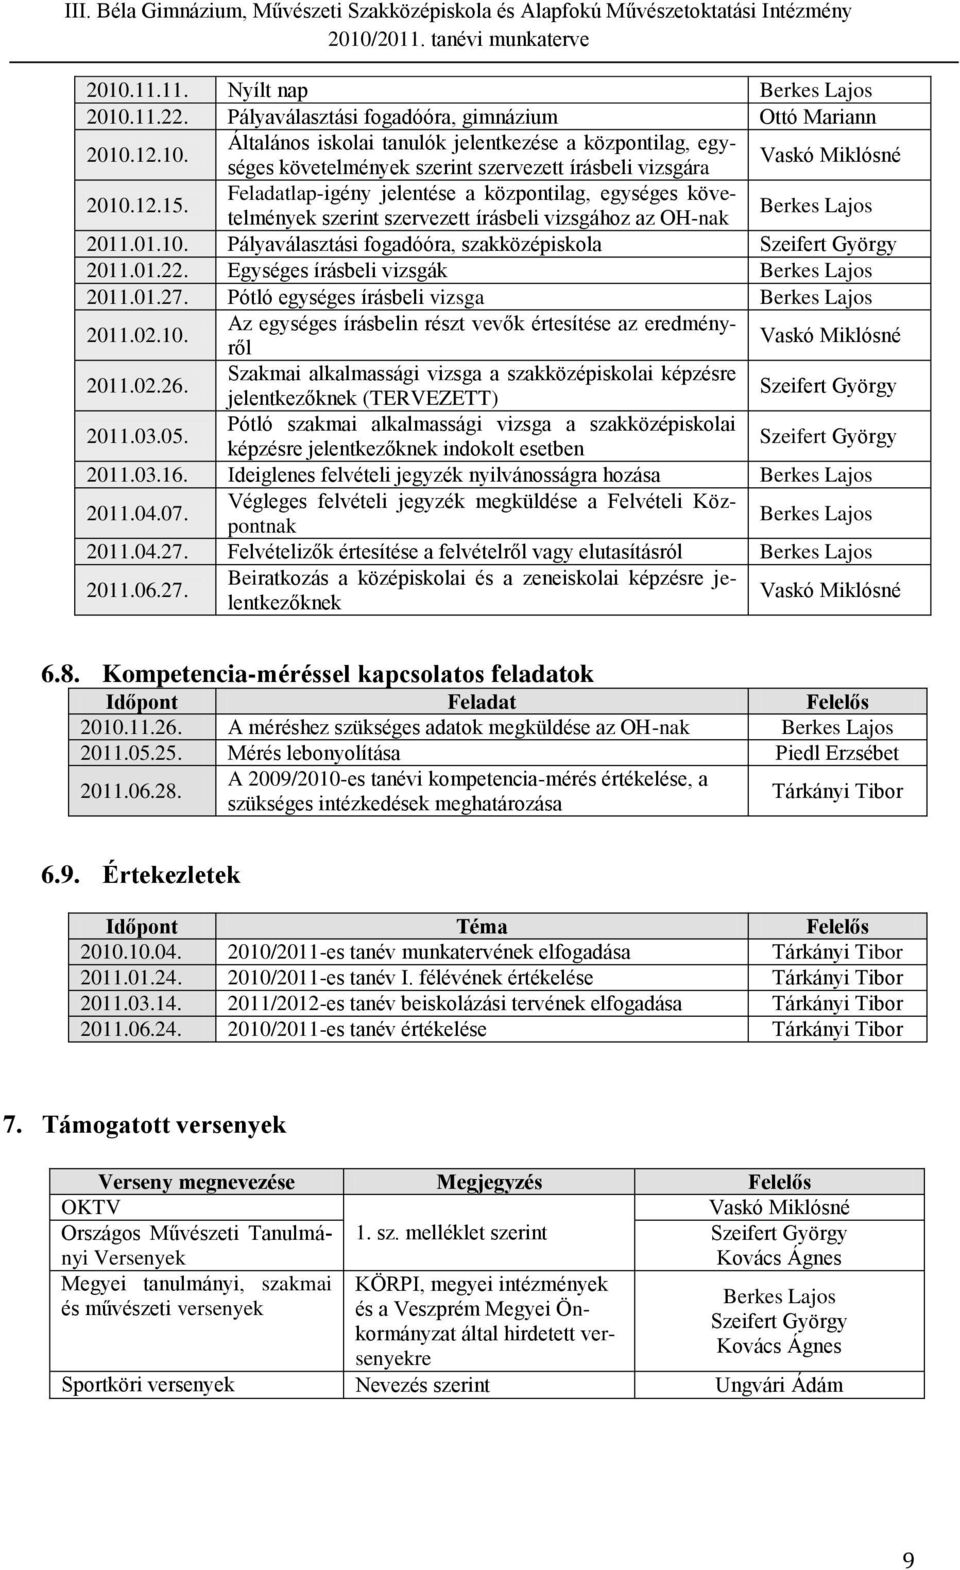 Egységes írásbeli vizsgák 2011.01.27. Pótló egységes írásbeli vizsga 2011.02.10. Az egységes írásbelin részt vevők értesítése az eredményről Vaskó Miklósné 2011.02.26.